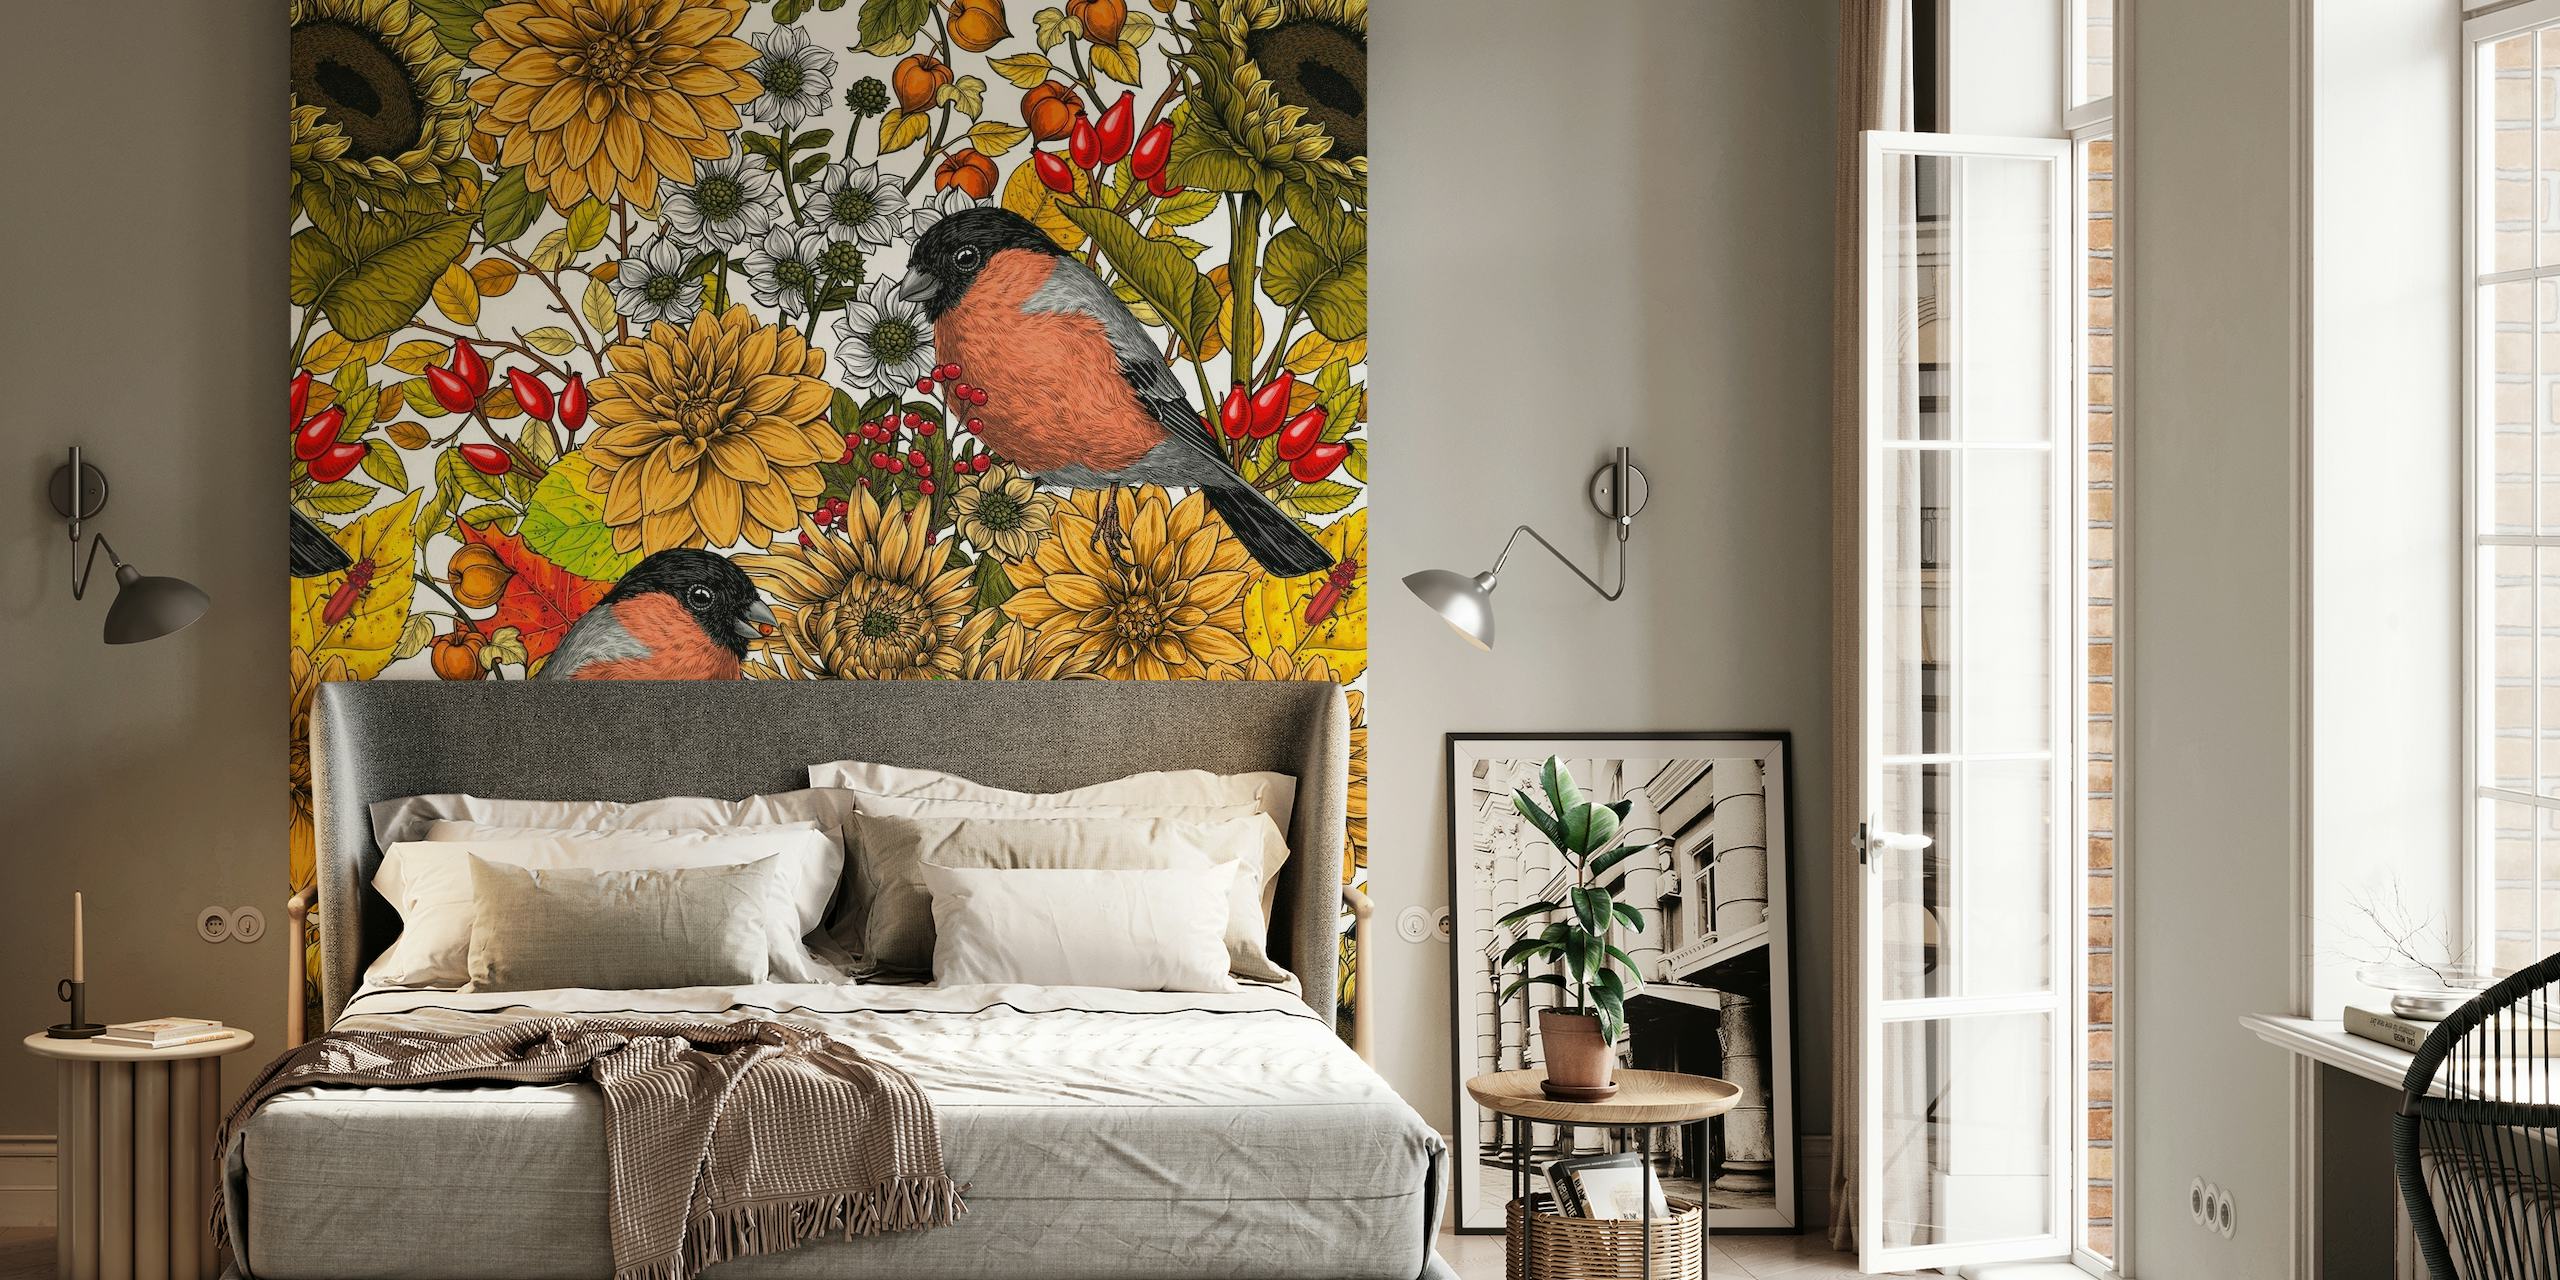 Fotobehang met zonnebloemen, goudsbloemen en vogels die het herfsttuinlandschap voorstellen